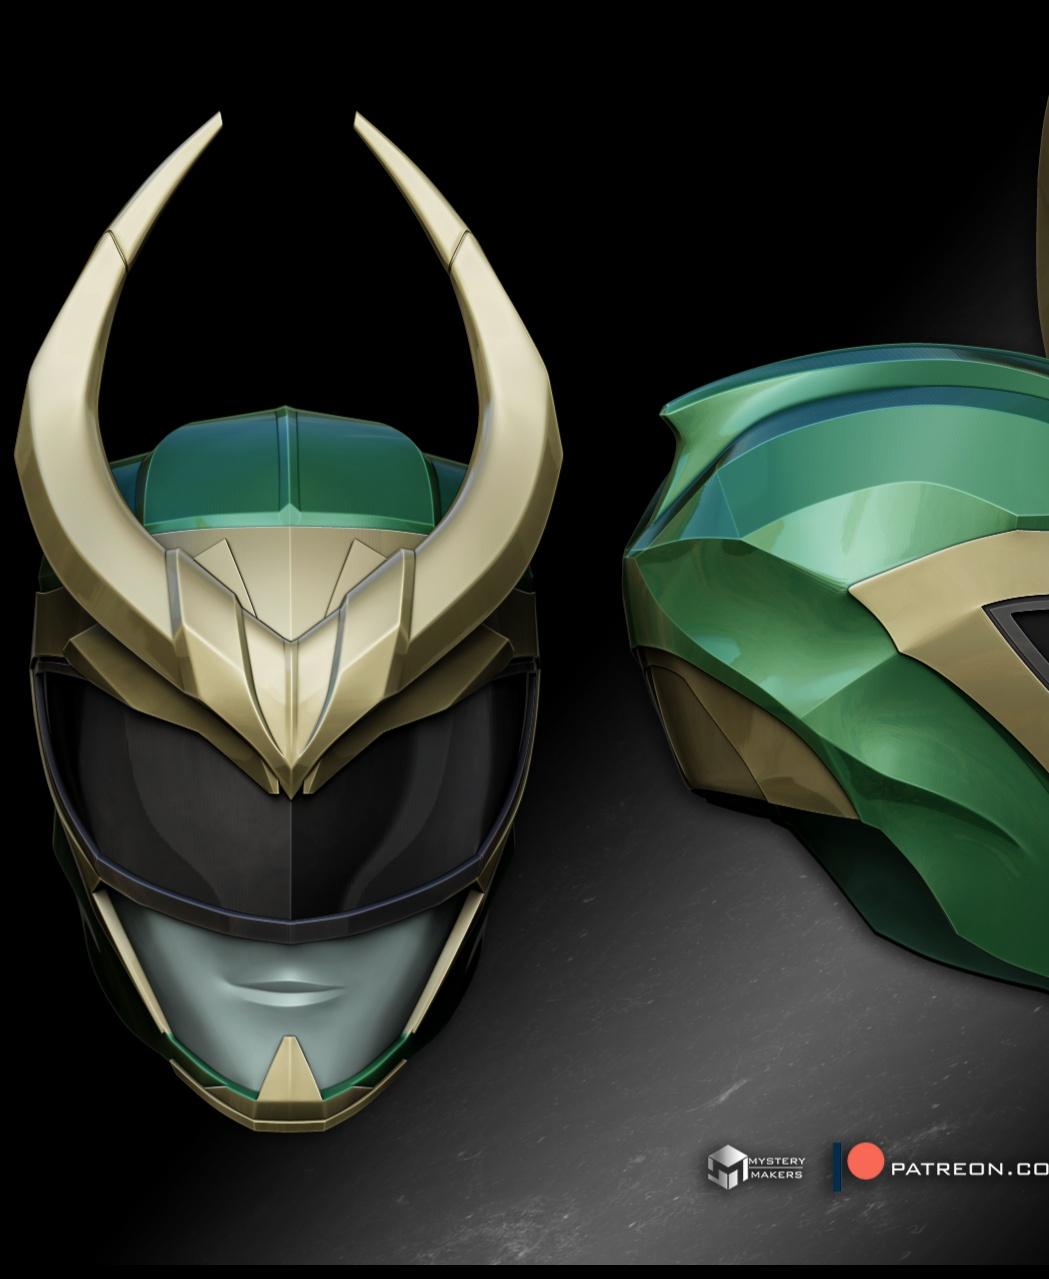 The Loki Ranger helmet 3d model